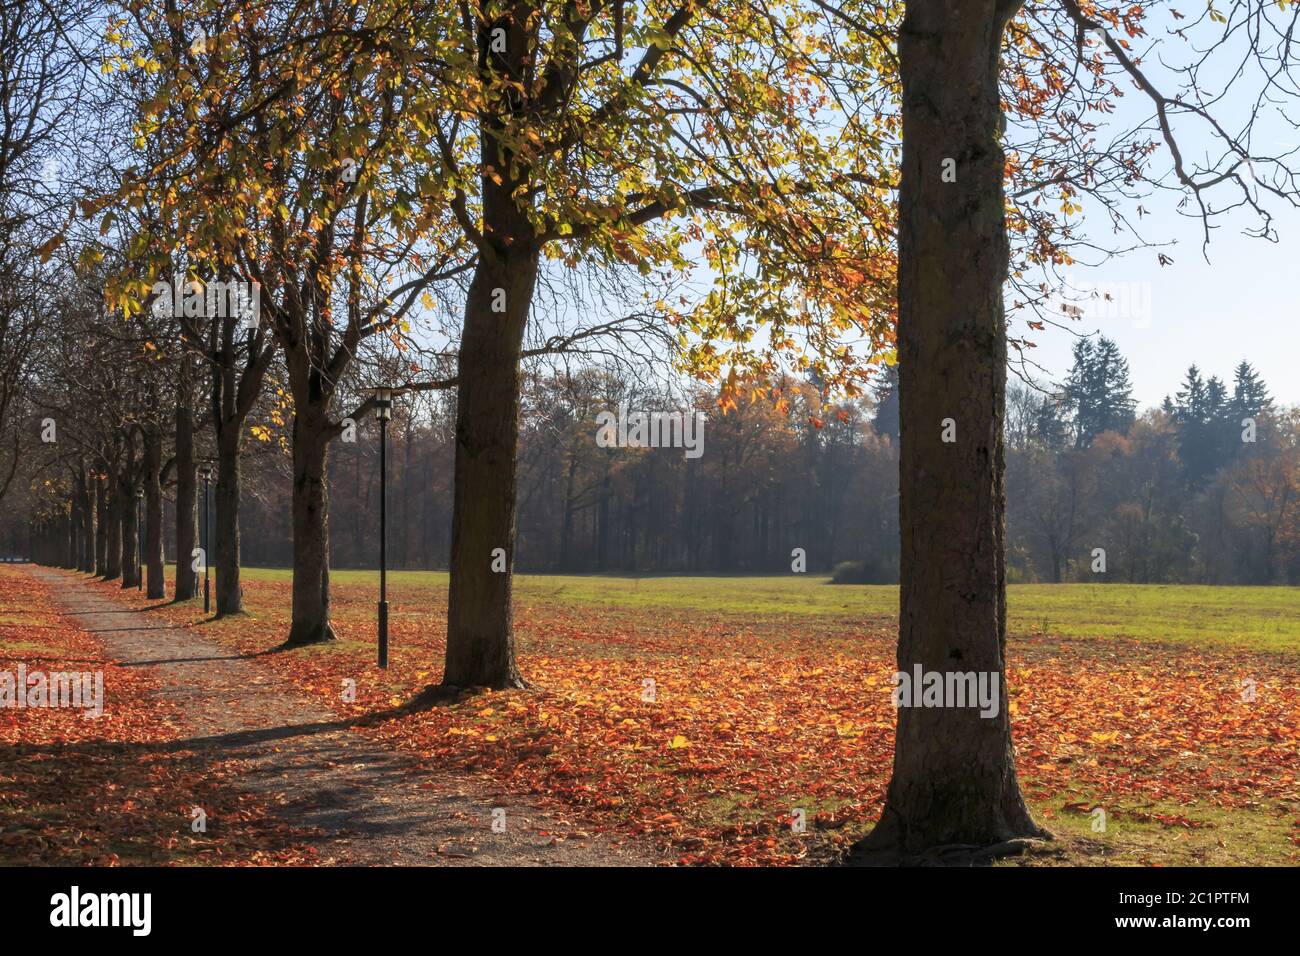 Kastanien Allee, Stimmung Bild, Herbst, november Stockfoto